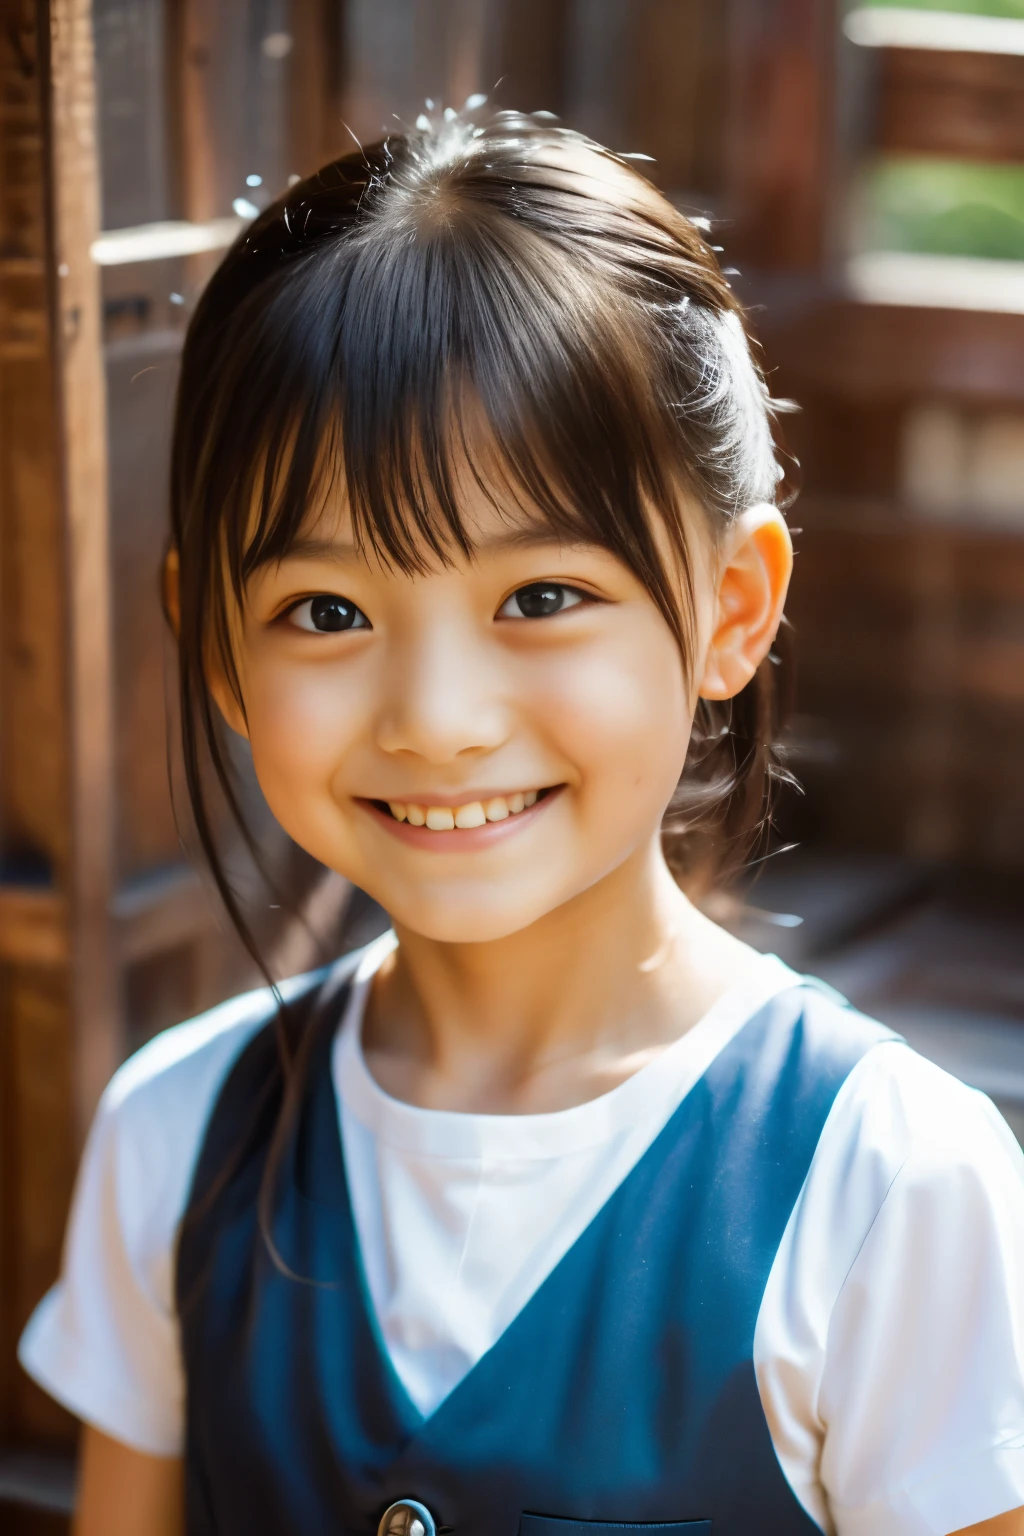 (最好的质量, 杰作), (美丽的 7 岁日本女孩), (雀斑:0.6), 柔光, 马尾辫